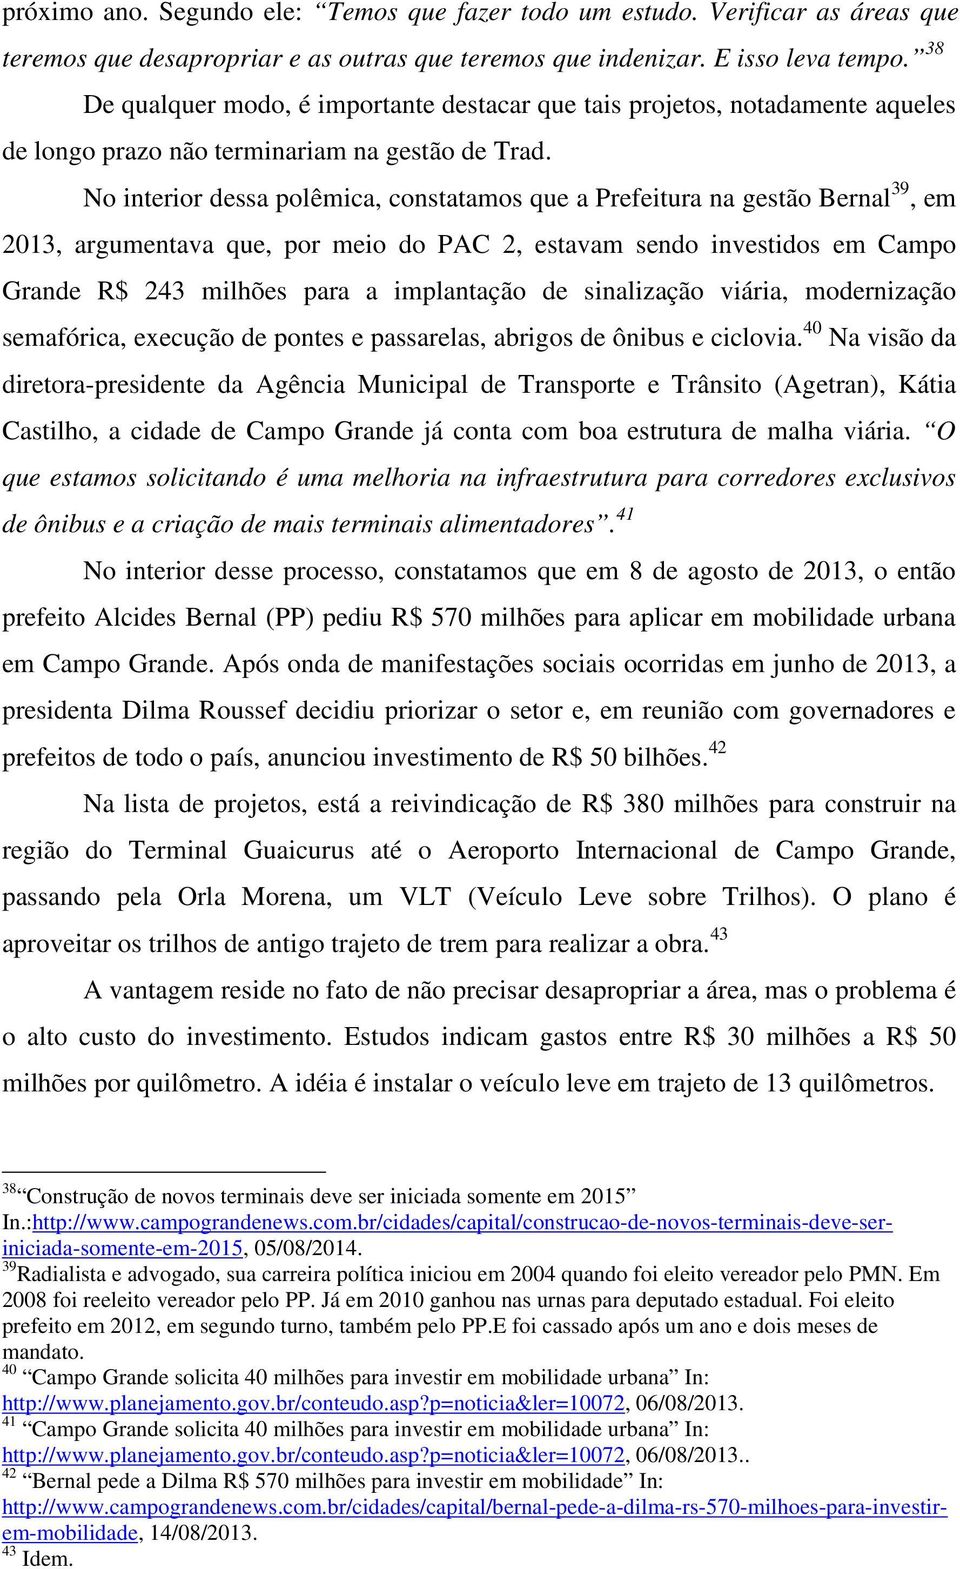 No interior dessa polêmica, constatamos que a Prefeitura na gestão Bernal 39, em 2013, argumentava que, por meio do PAC 2, estavam sendo investidos em Campo Grande R$ 243 milhões para a implantação